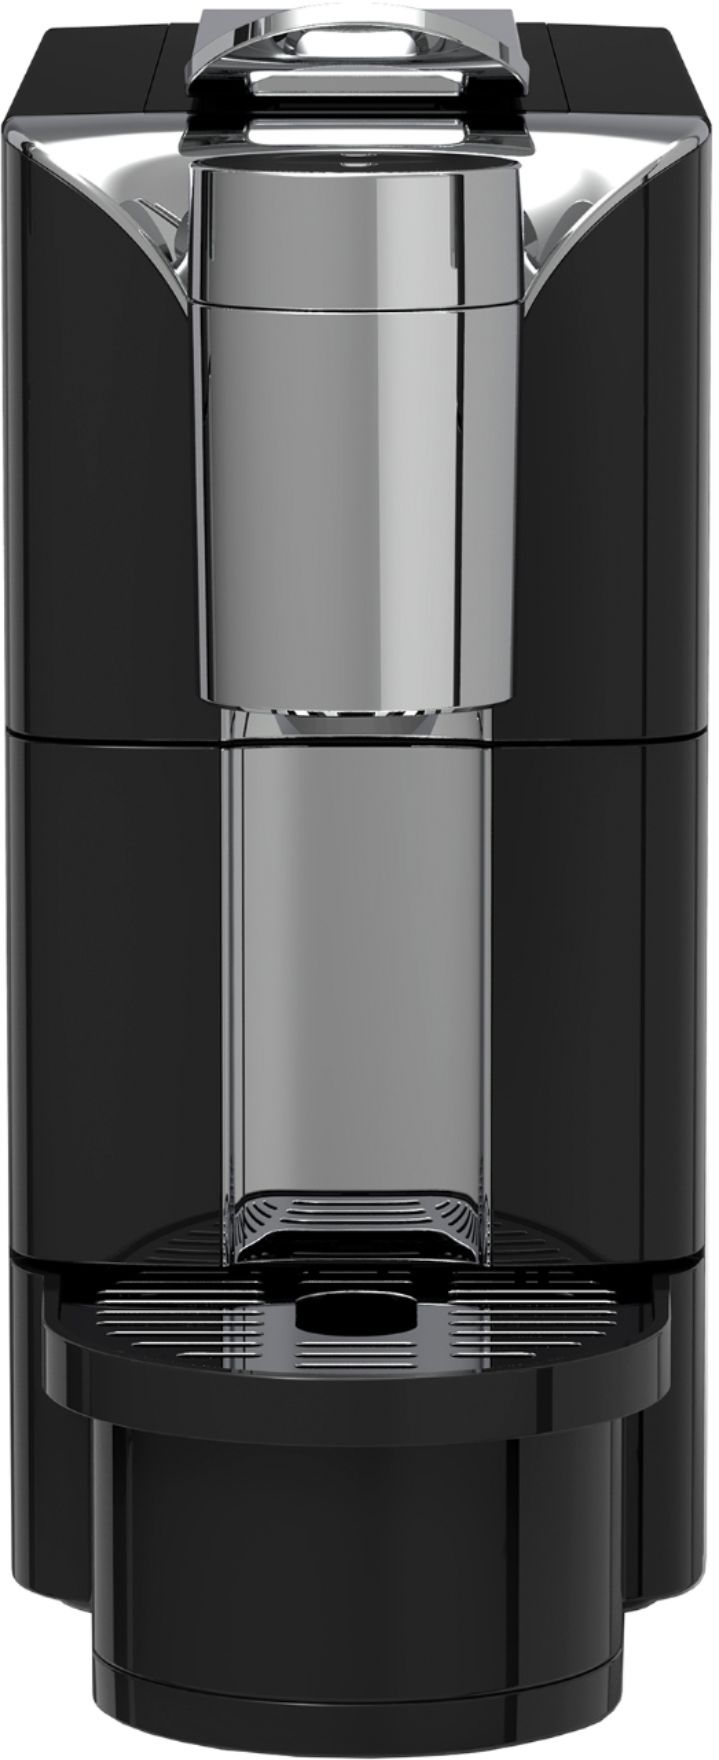 Bella Pro Series 14-Cup Coffee Maker Black stainless steel 90061 - Best Buy